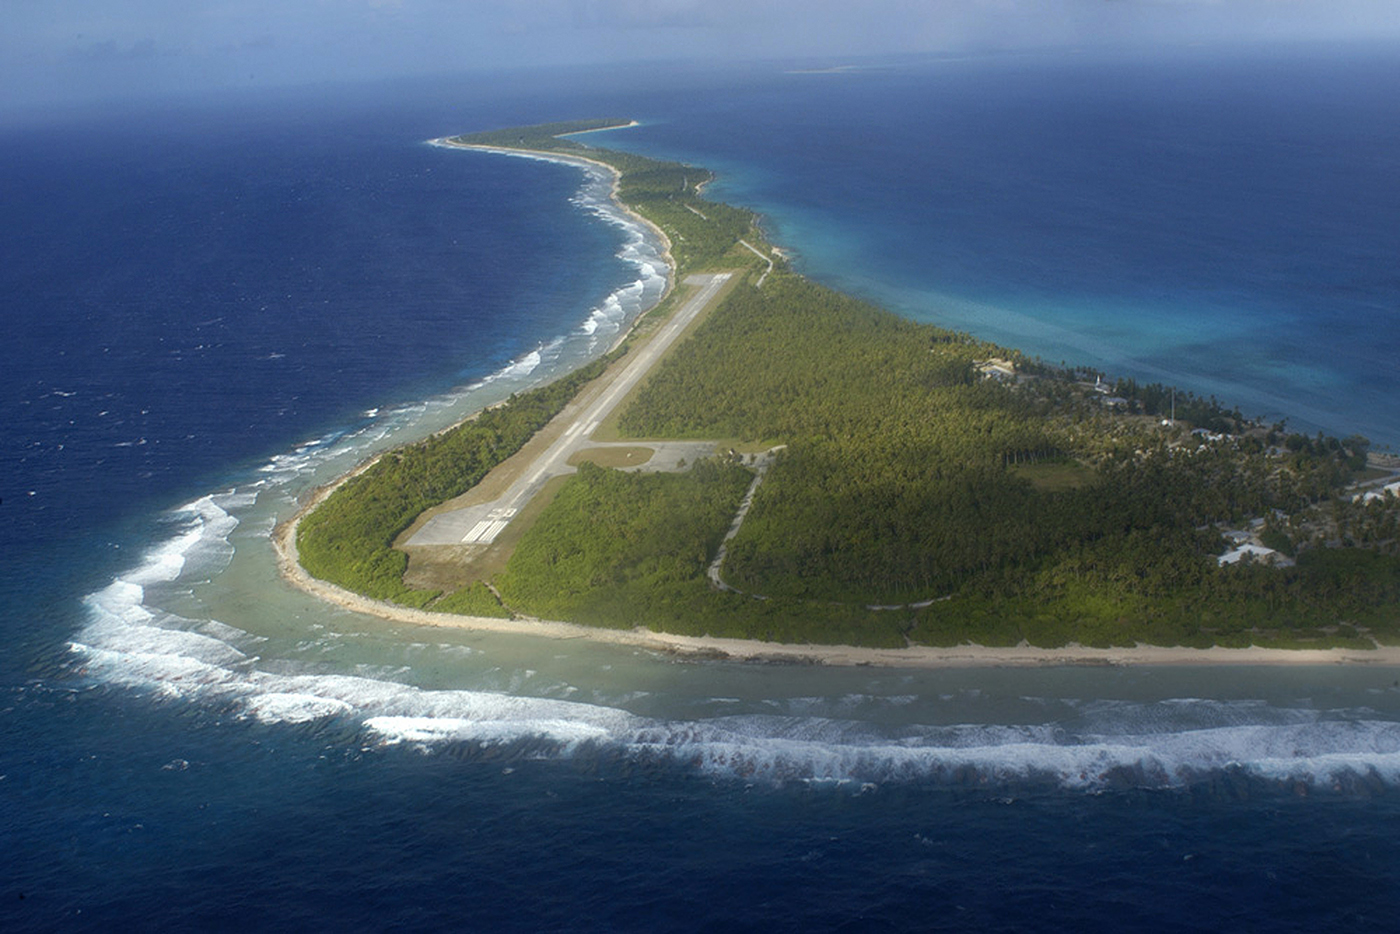 L'atoll de Rongelap, théâtre d'essais nucléaires américains jusqu'en 1966.